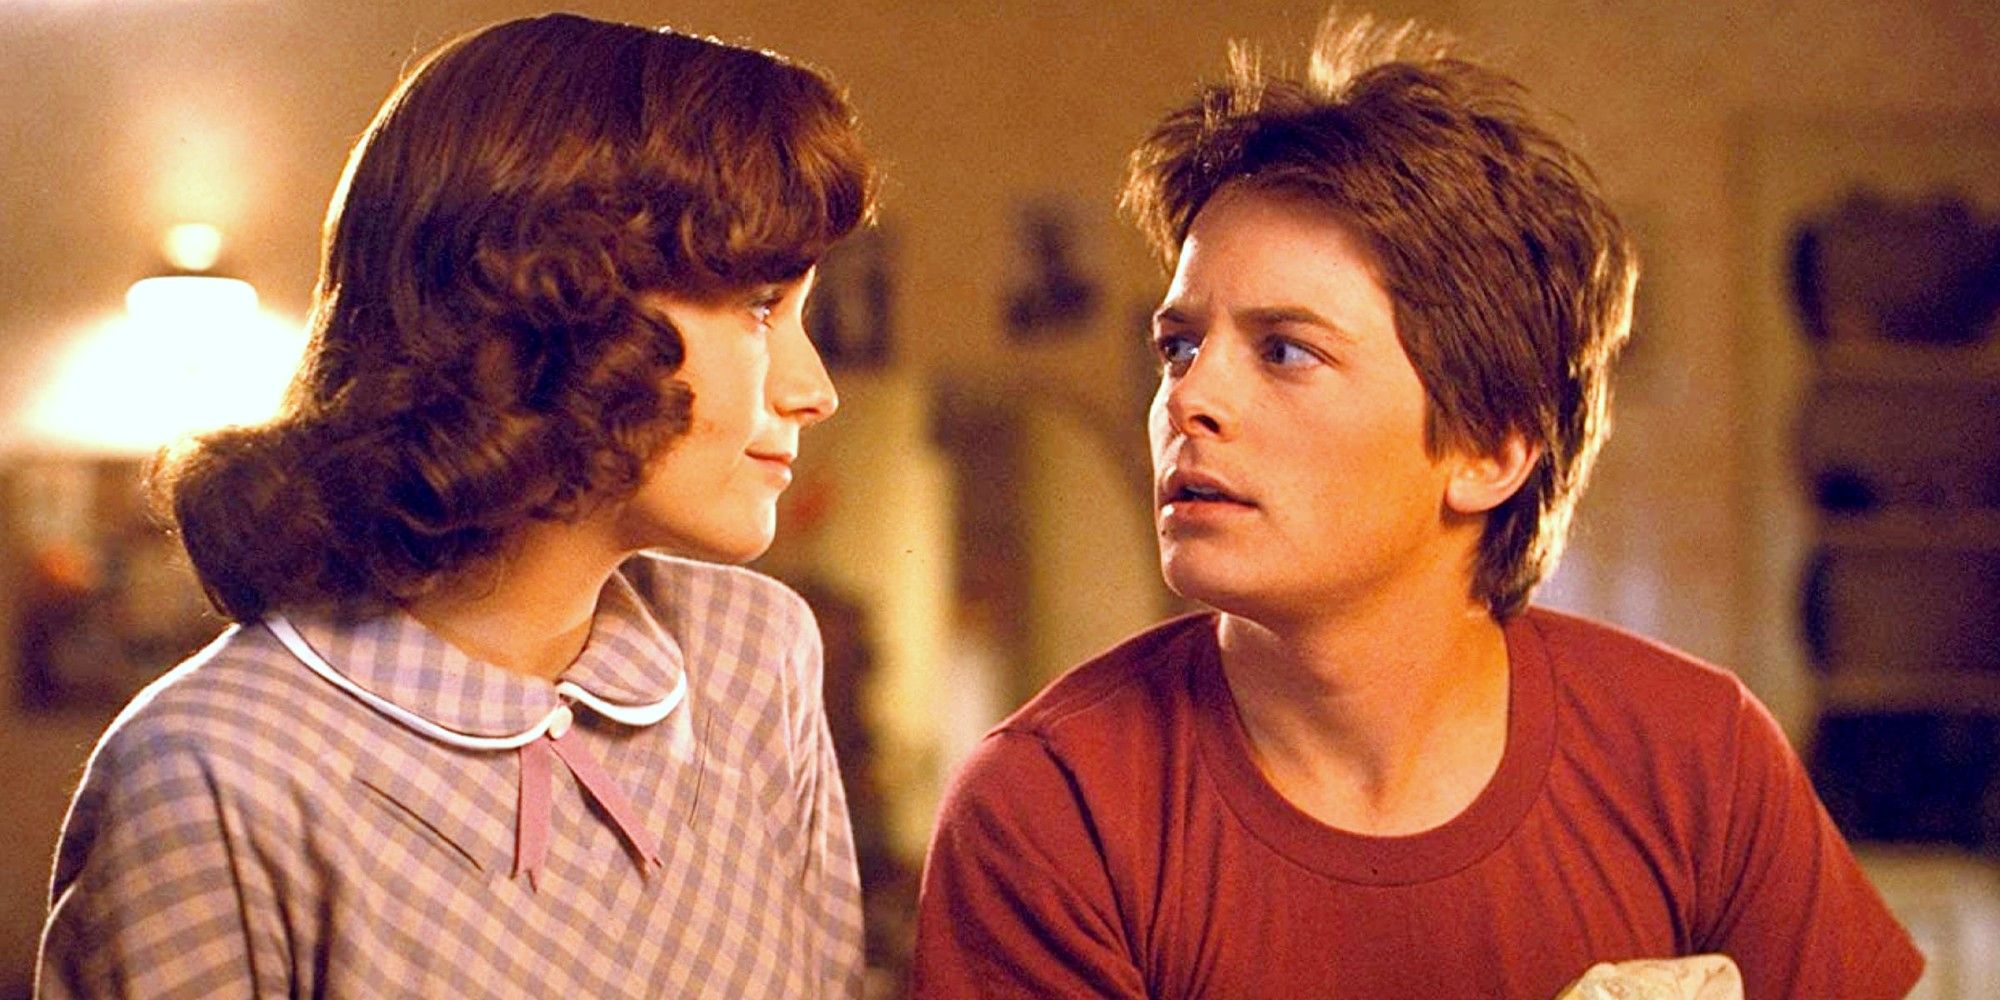 “Me di cuenta de que era extraño”: la teoría única de Michael J. Fox sobre el legado de Regreso al futuro